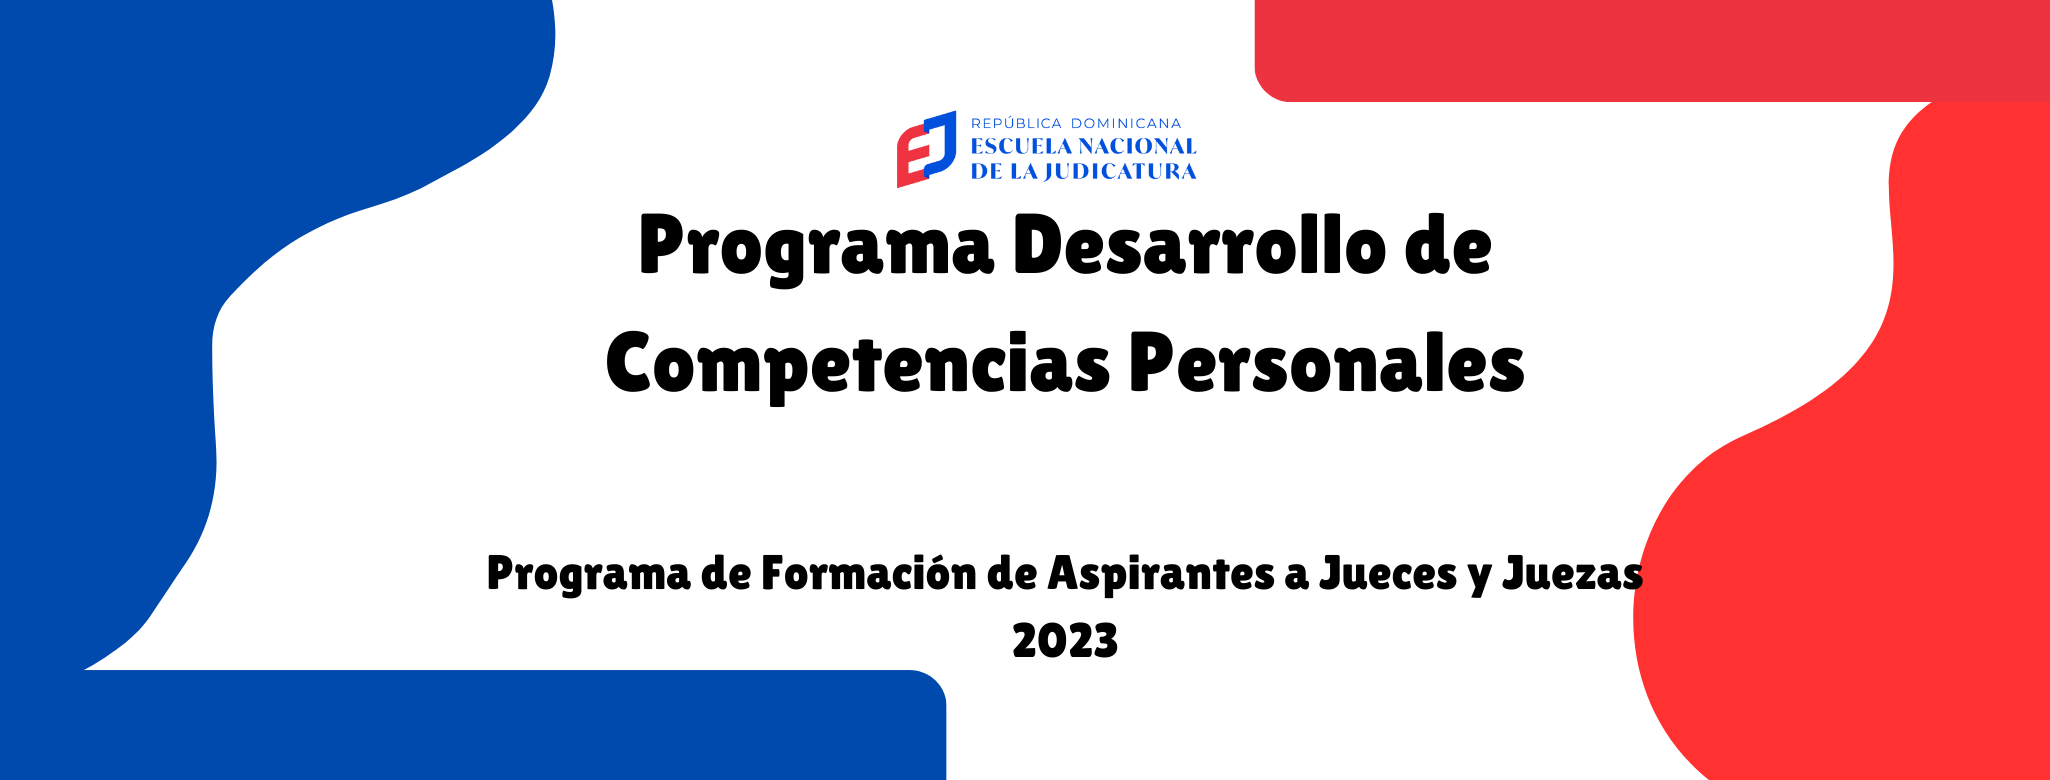 Programa Desarrollo de Competencias Personales - Programa de Formación de Aspirantes a Jueces y Juezas 1-2023